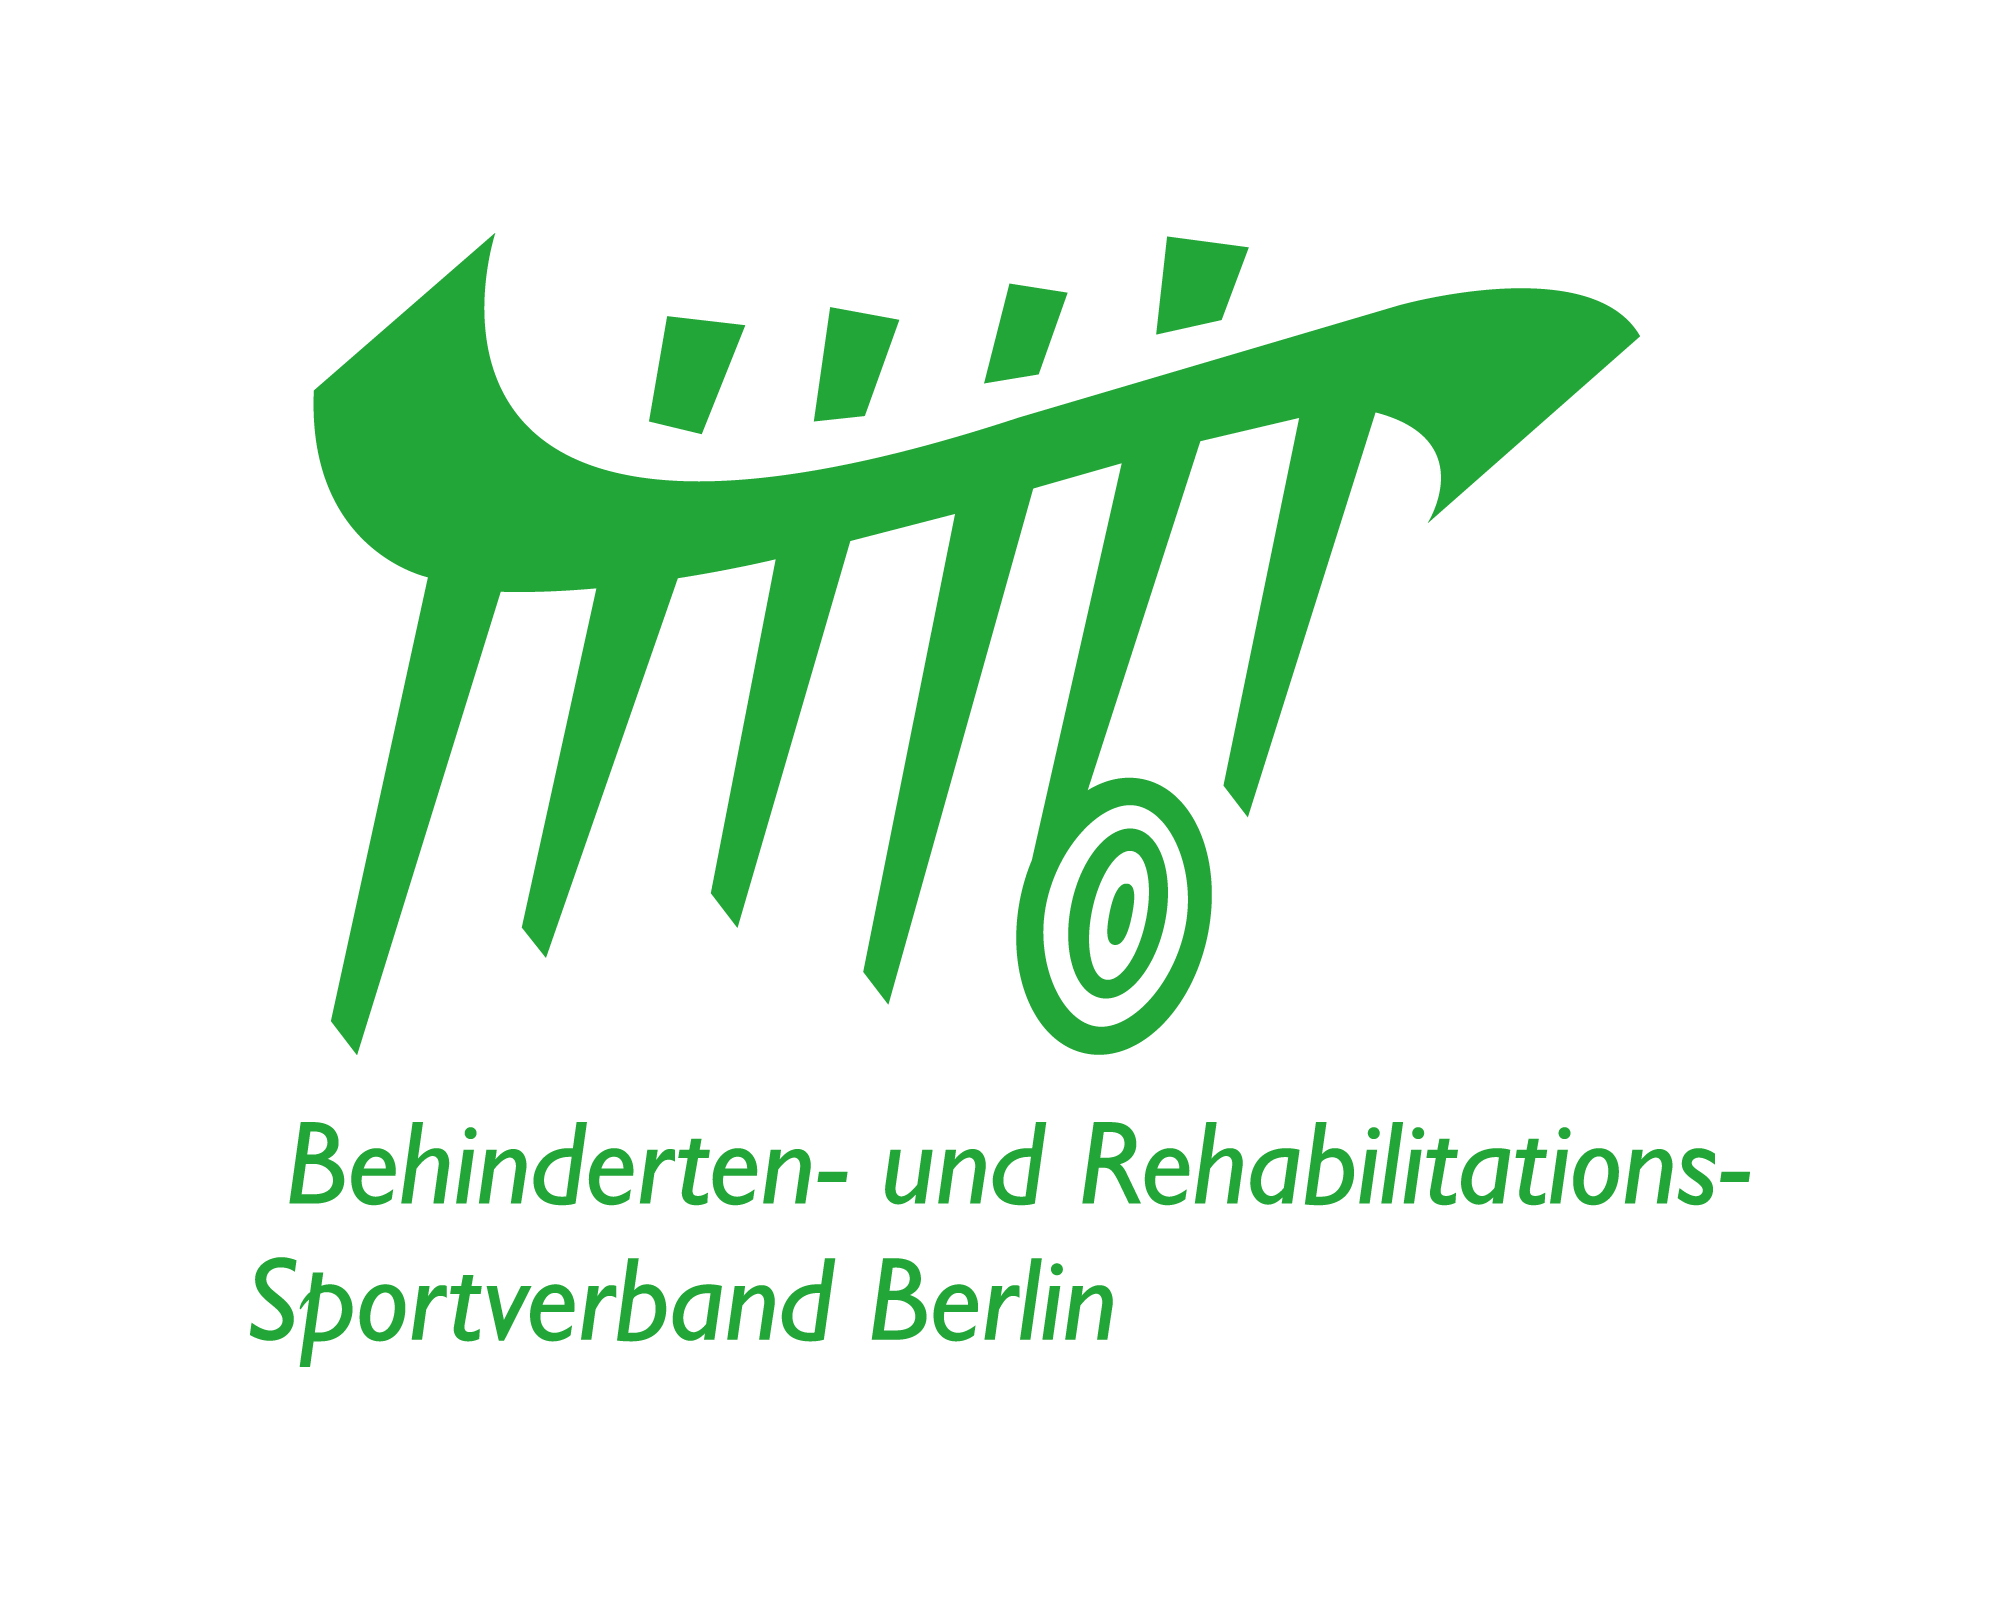 Logo des Behinderten- und Rehabilitations-Sportverbands Berlin - grüne Schrift mittel